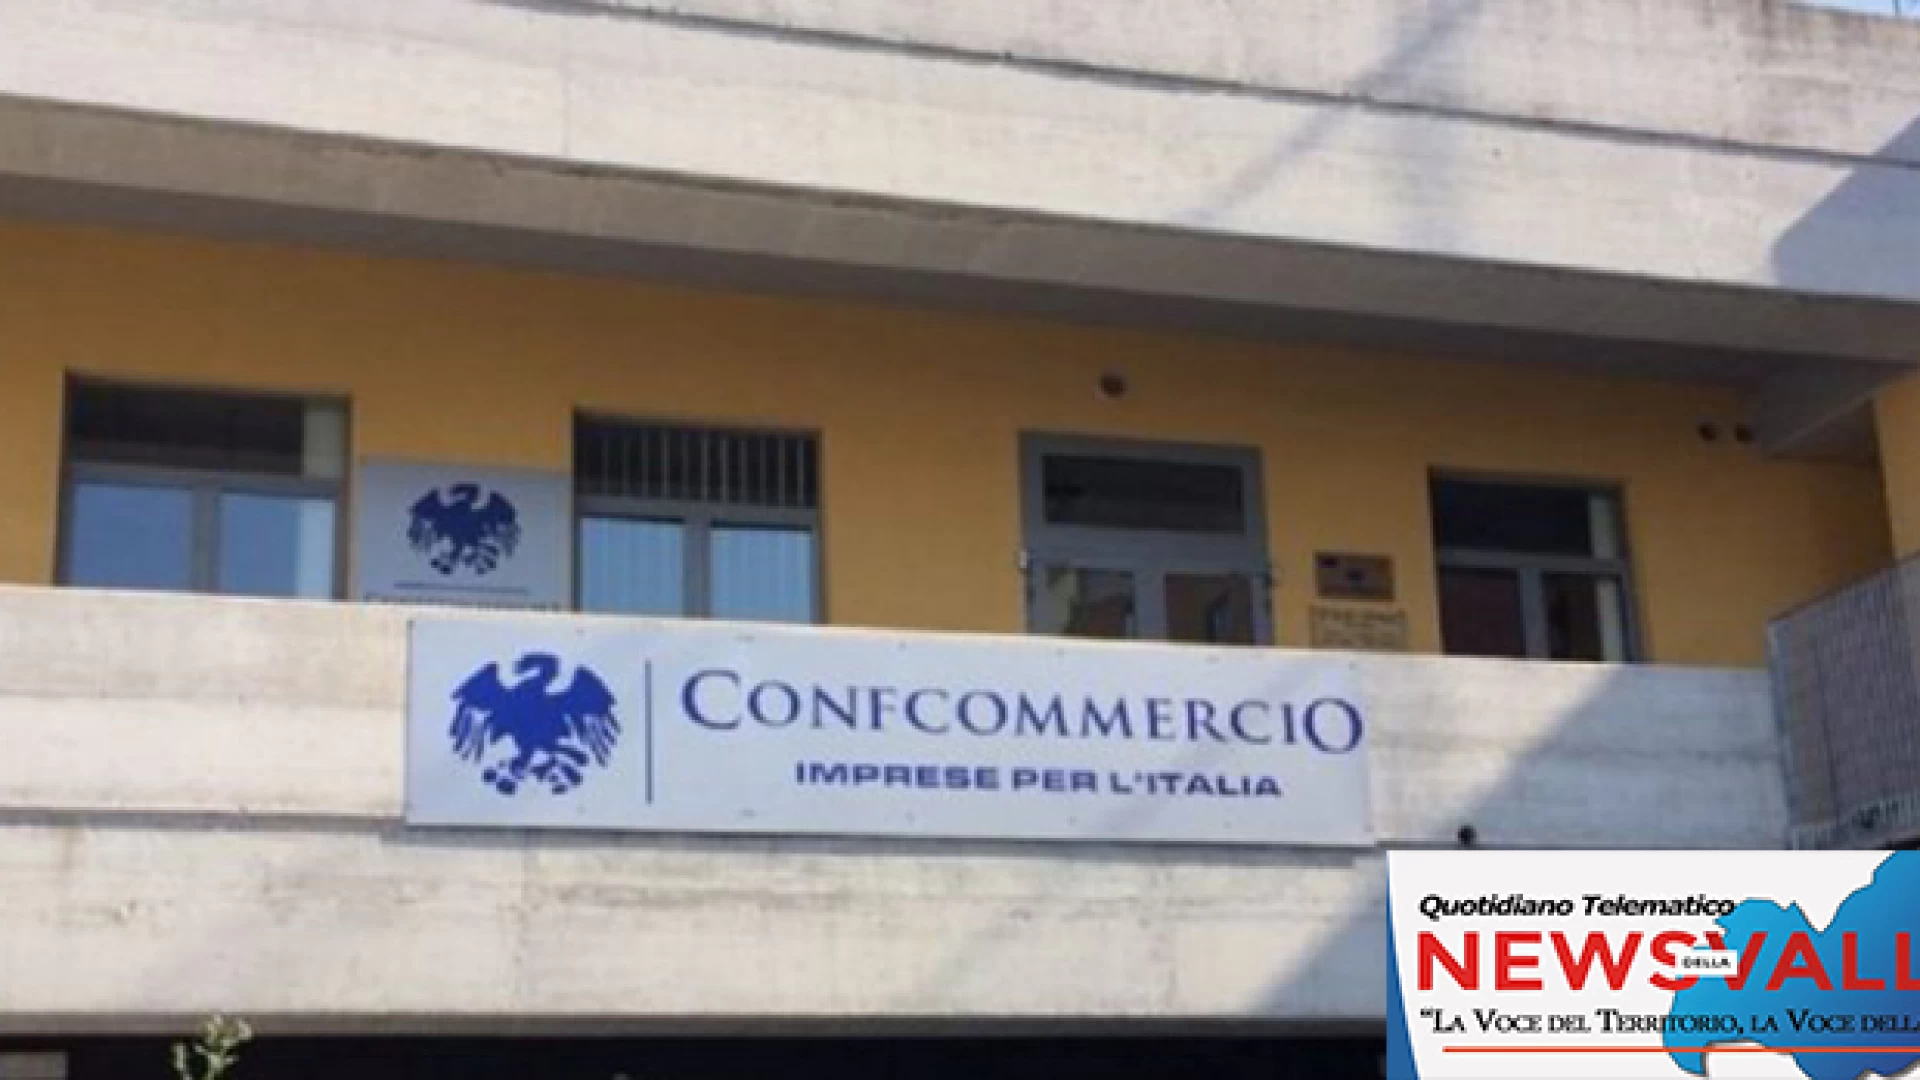 Confcommercio Molise: elaborata locandina con i consigli da seguire anti coronavirus per le attività commerciali